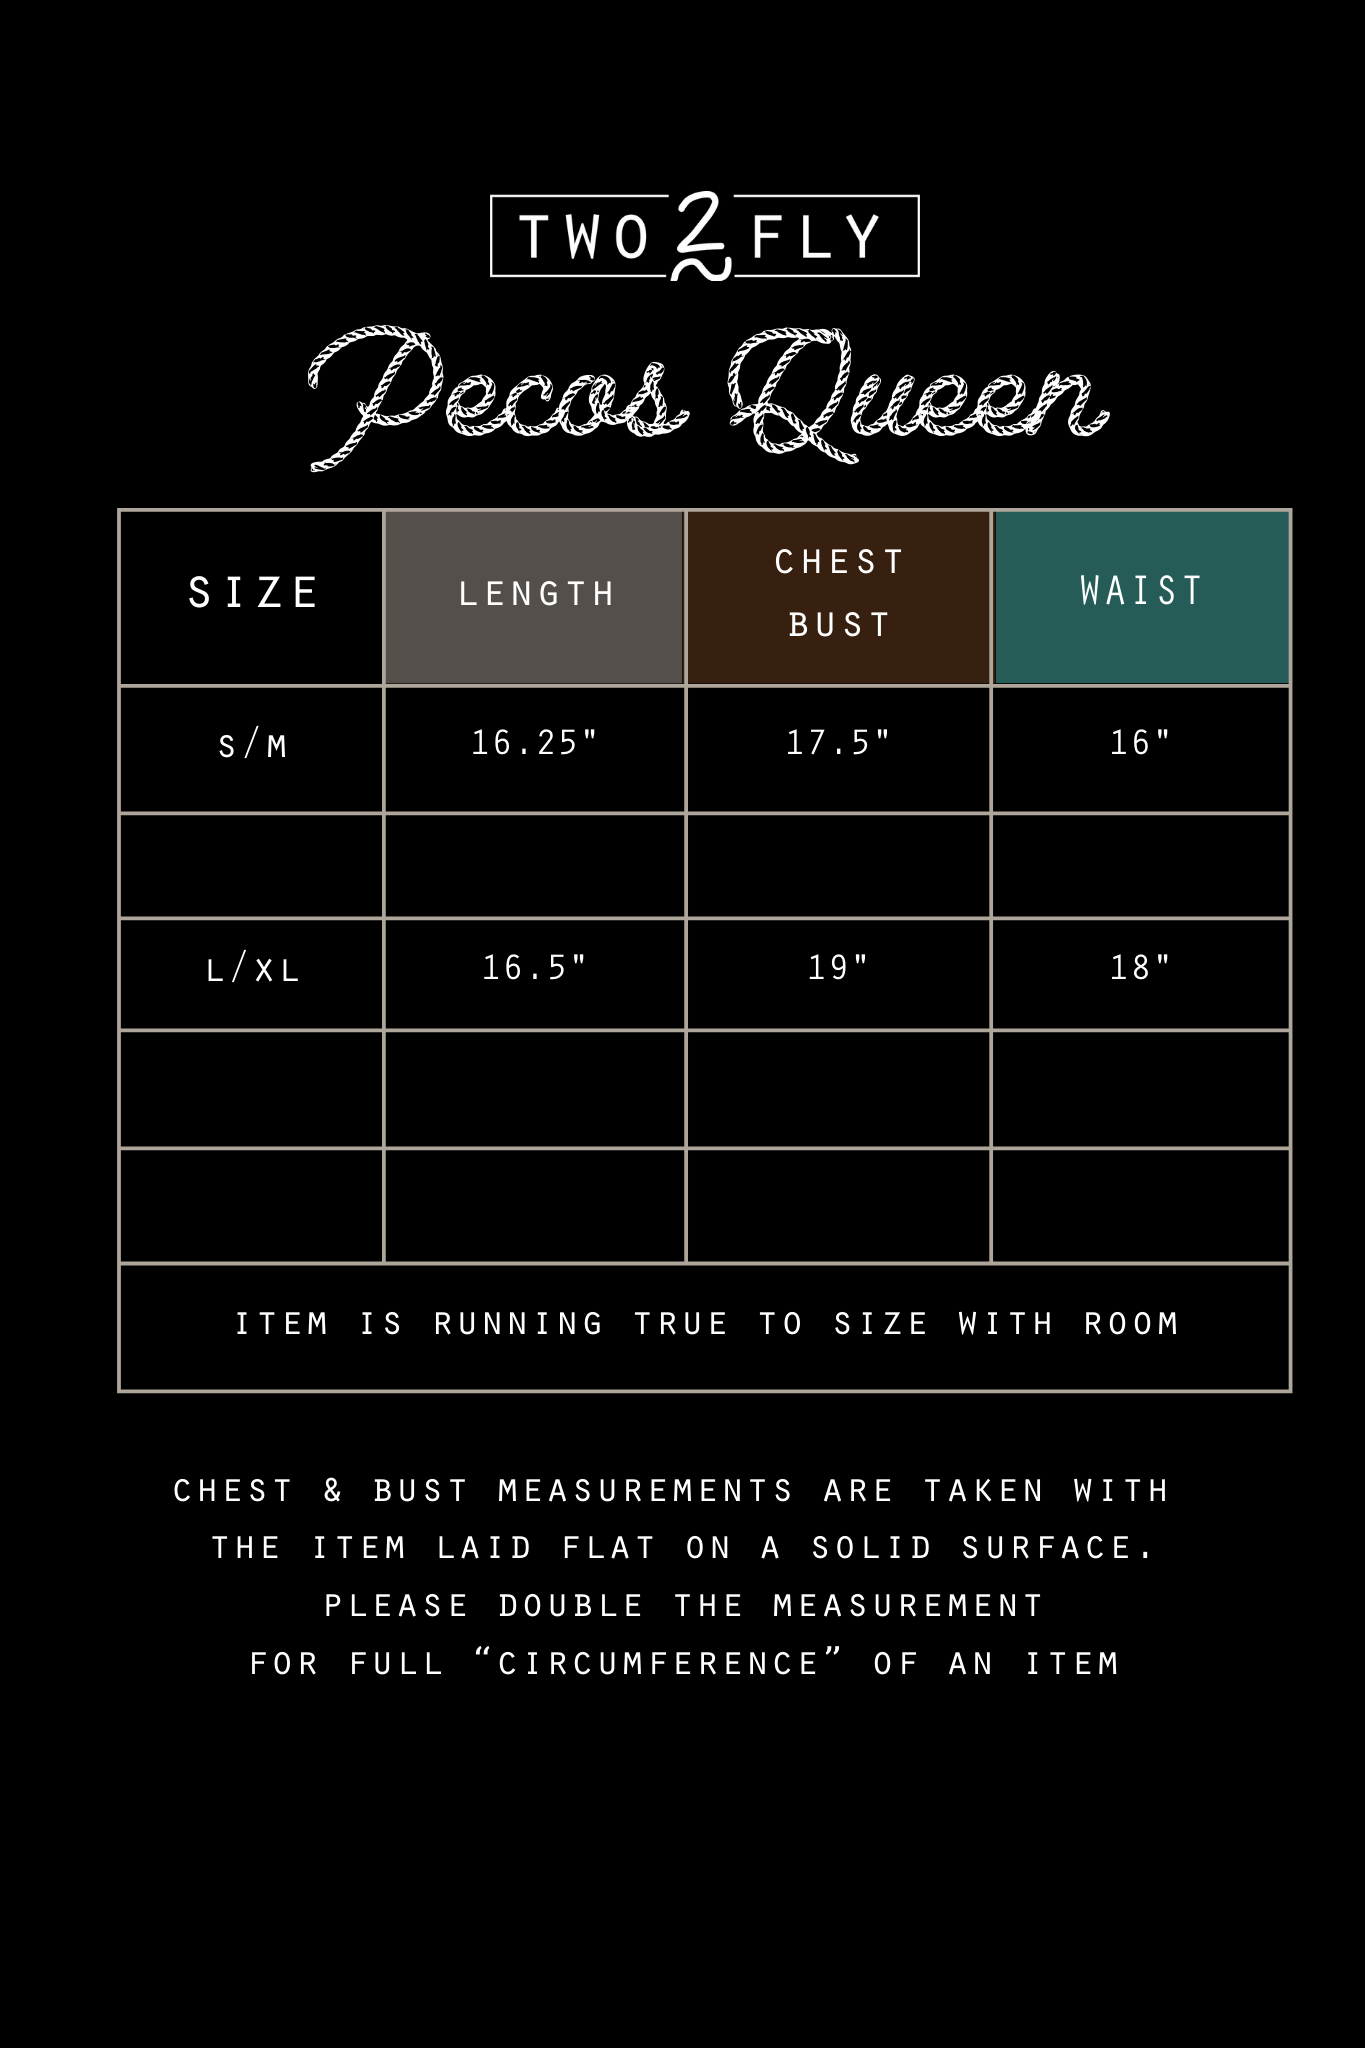 The Pecos Queen Vest